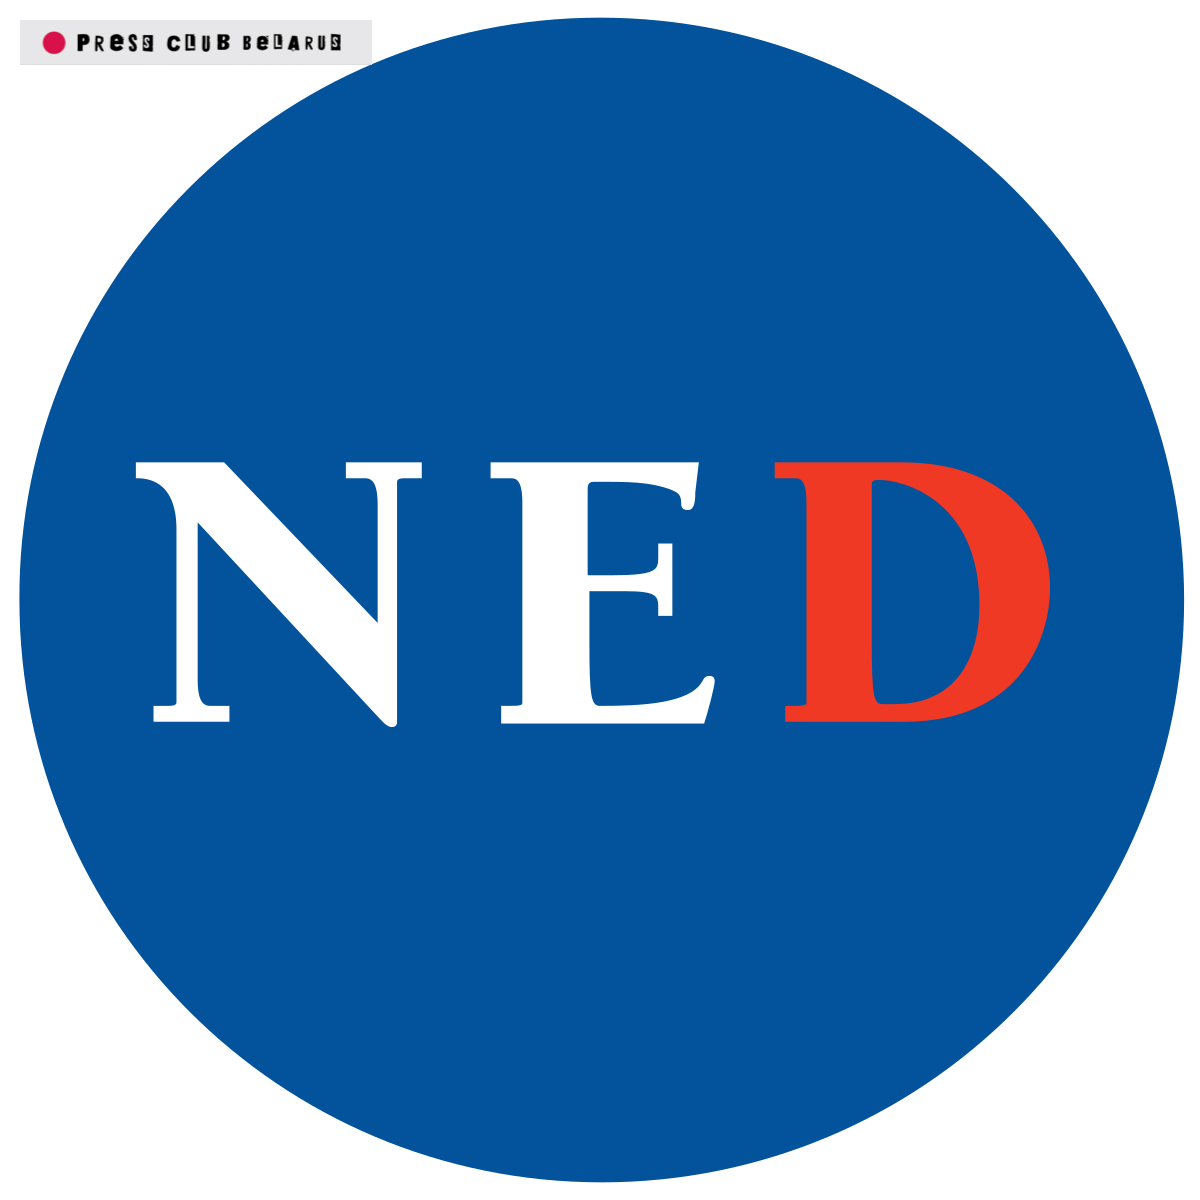 Новые гранты от Фонда NED в поддержку СМИ. Идёт набор заявок